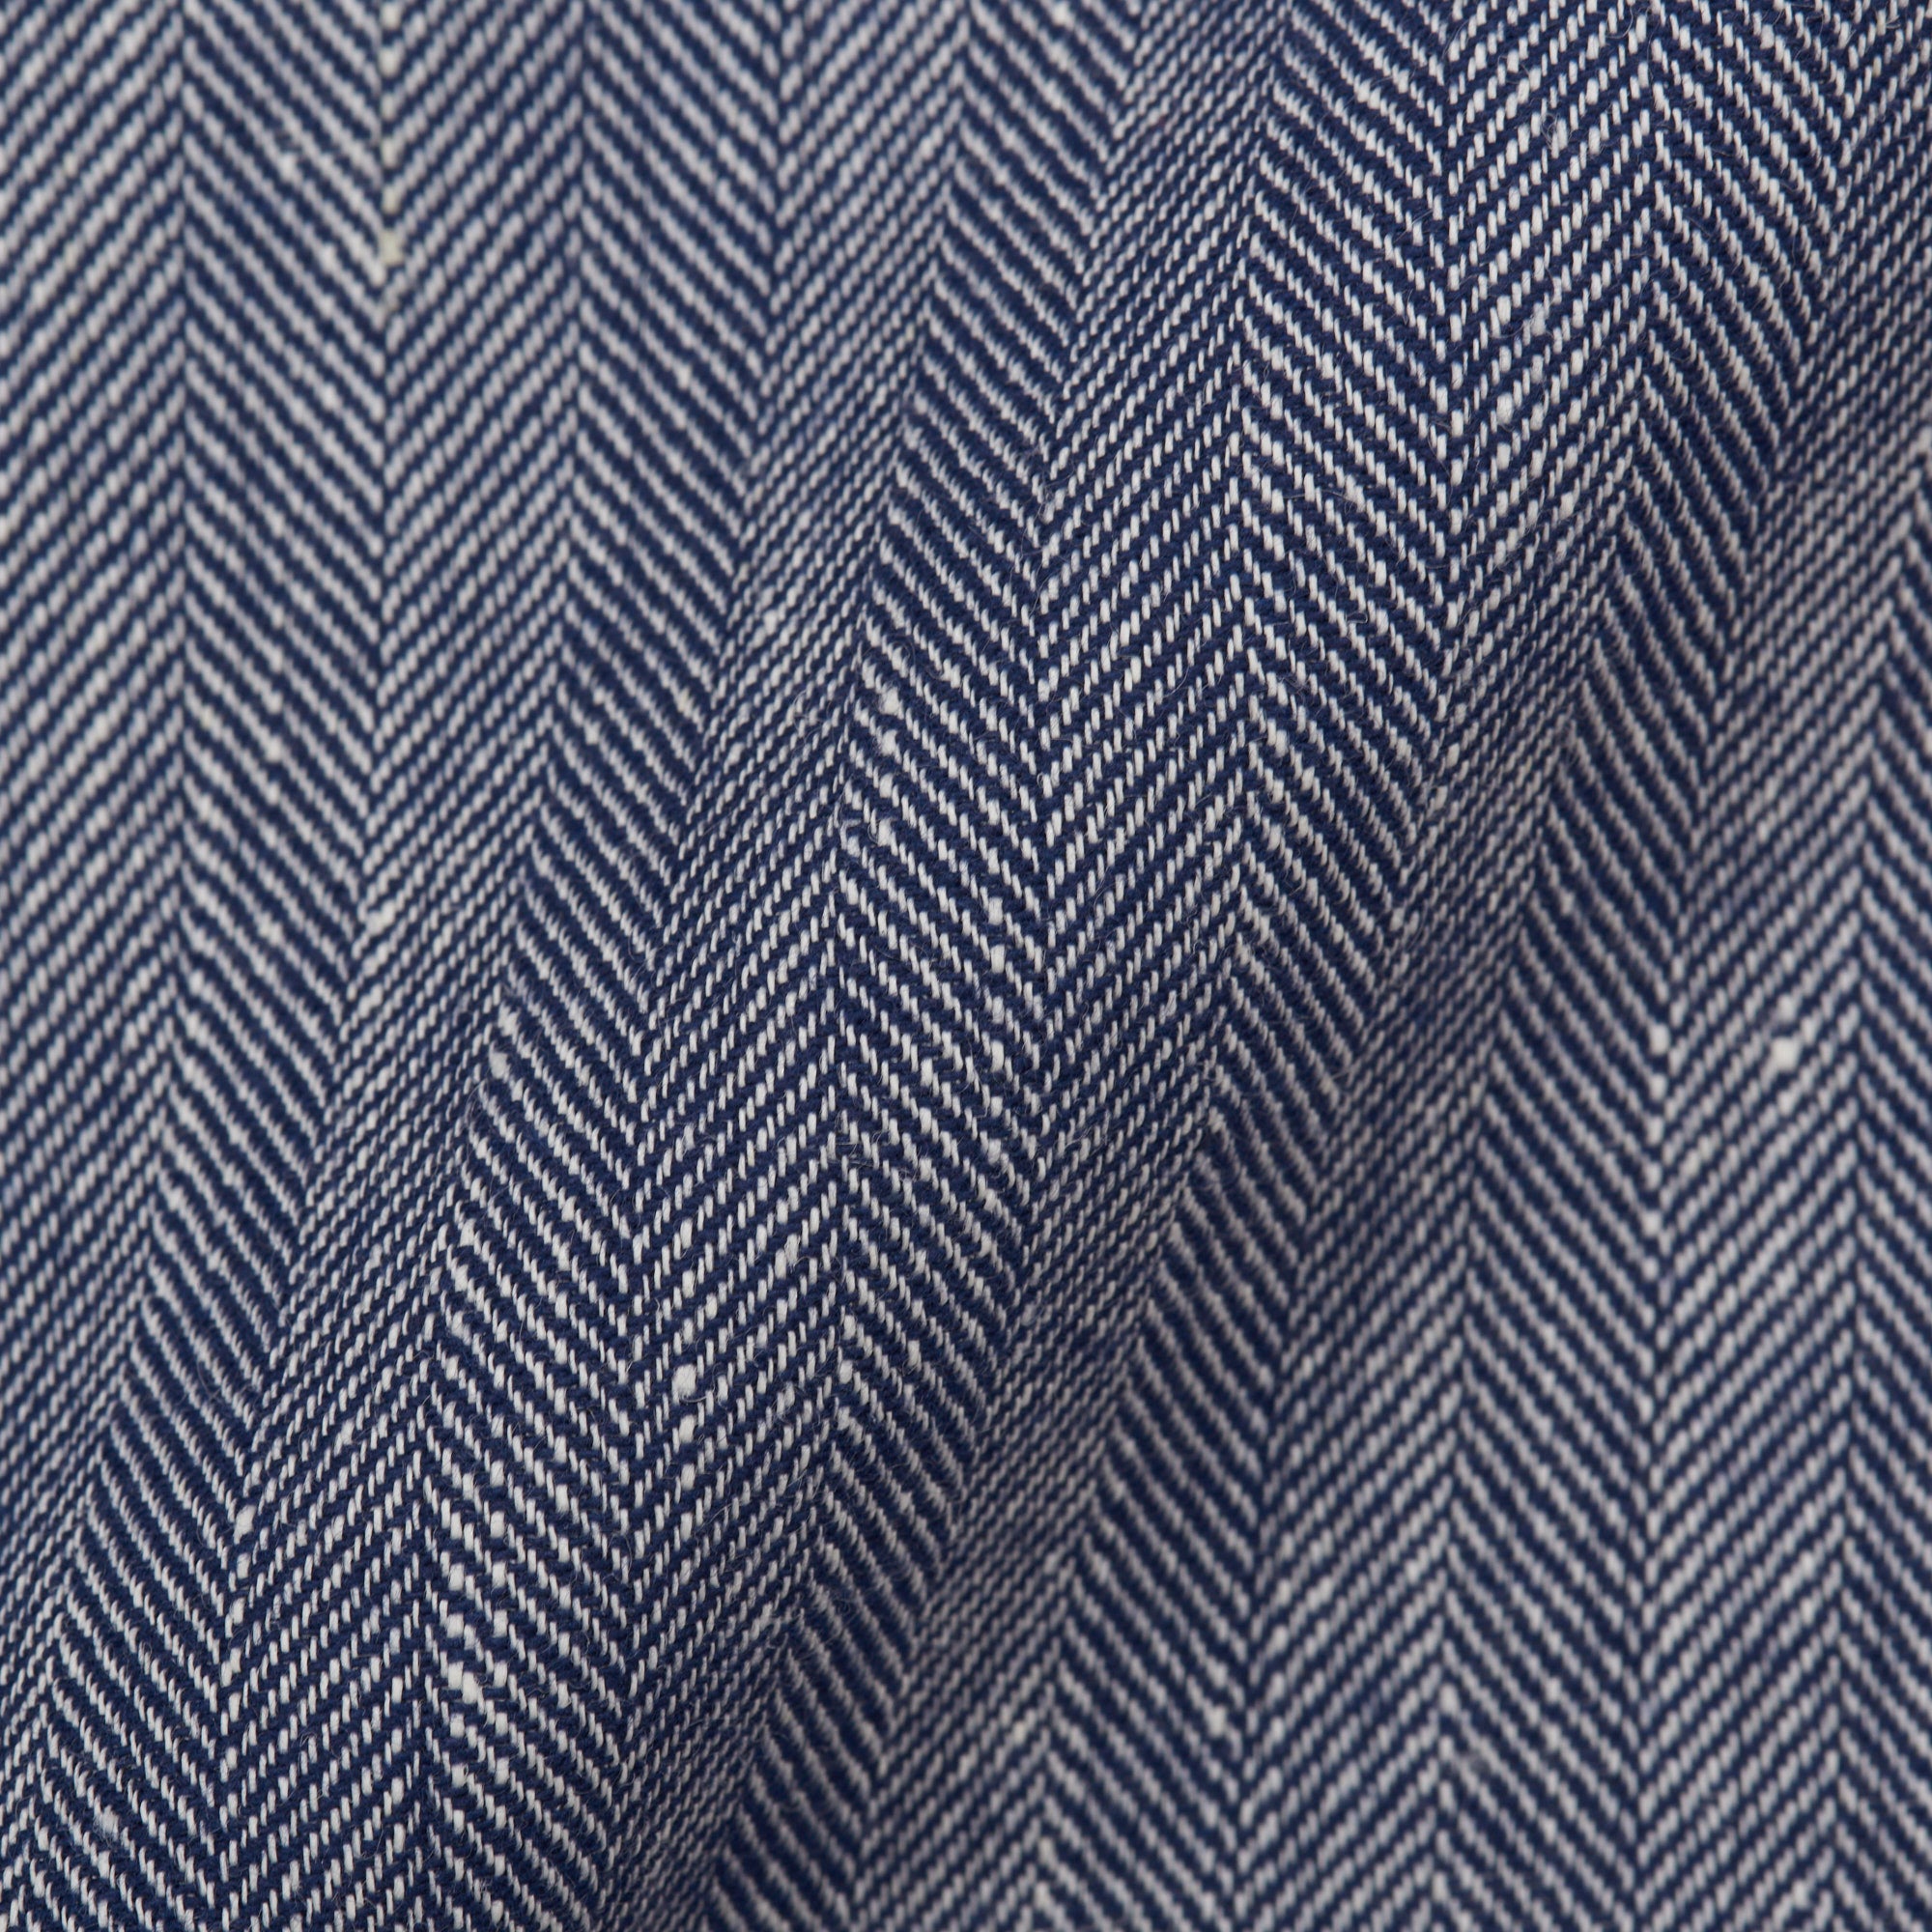 ANTÉ Napoli Blue Herringbone Linen-Cotton Unlined Suit EU 46 NEW US 36 Slim Fit ANTÉ